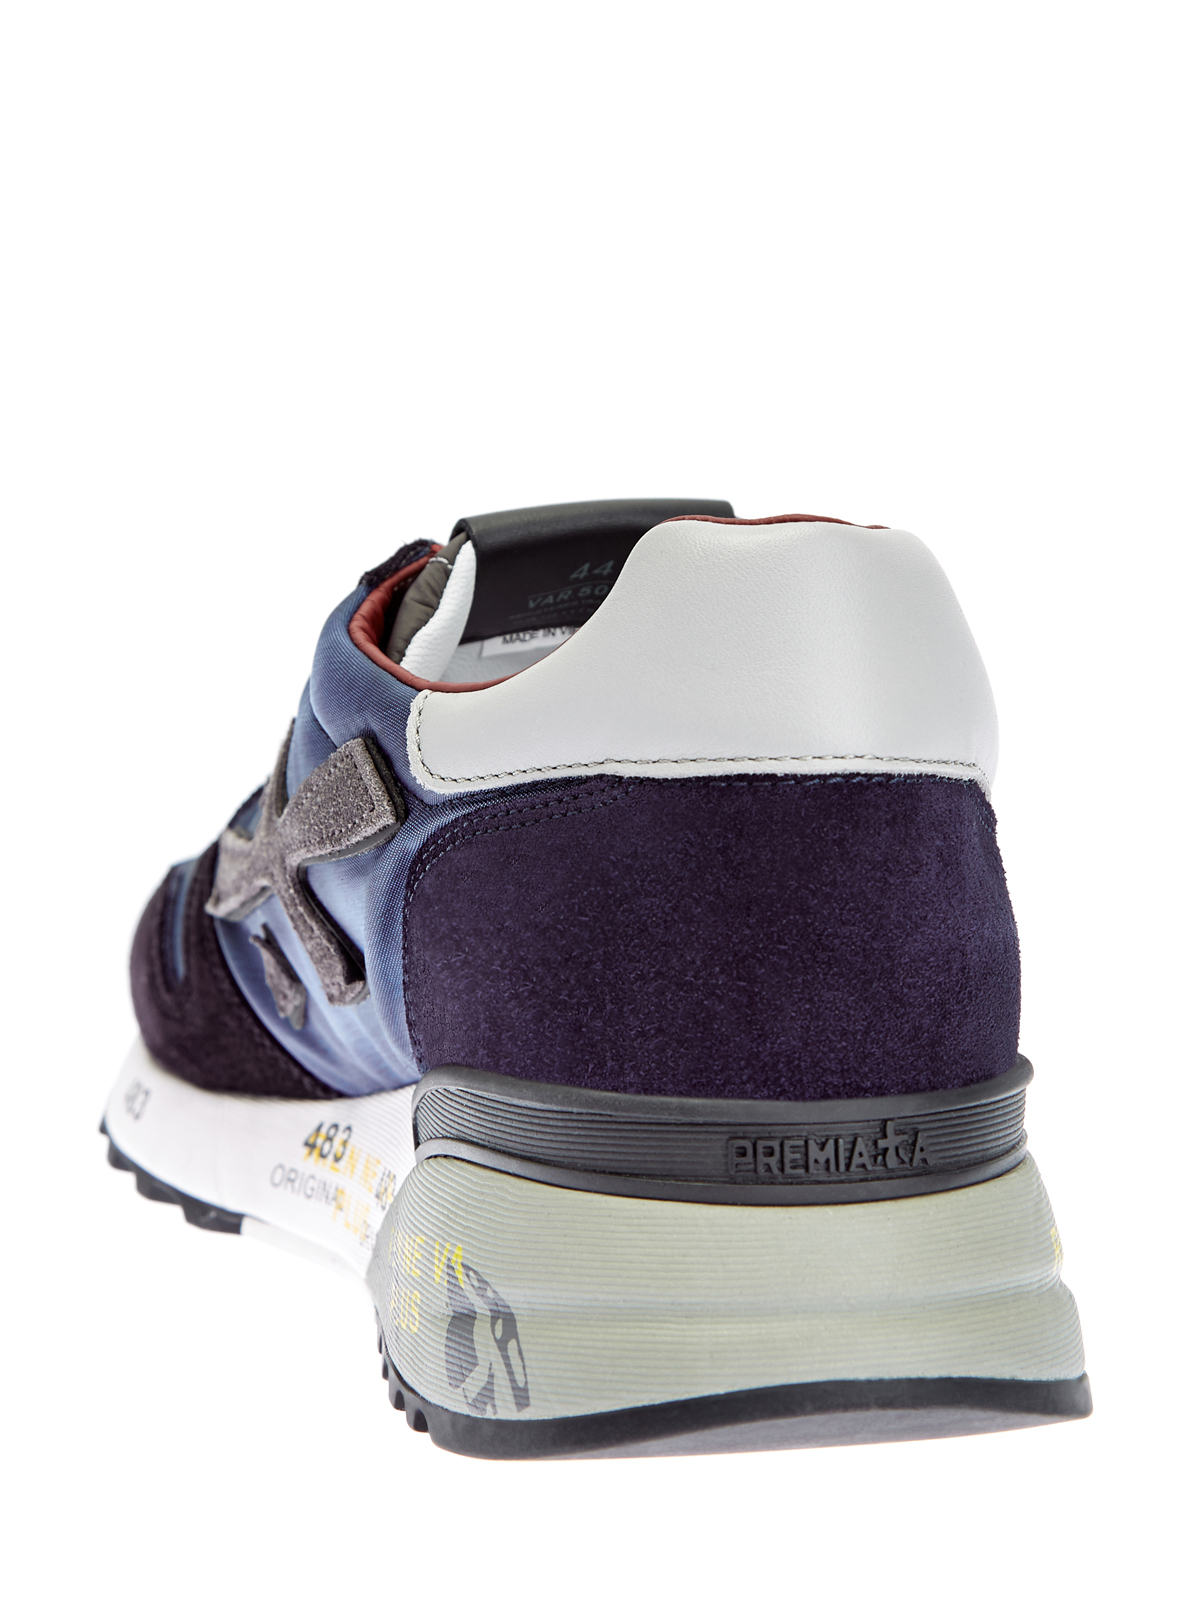 Эргономичные кроссовки Mick с объемным логотипом PREMIATA, цвет мульти, размер 6;7;8;9;10;11 - фото 4